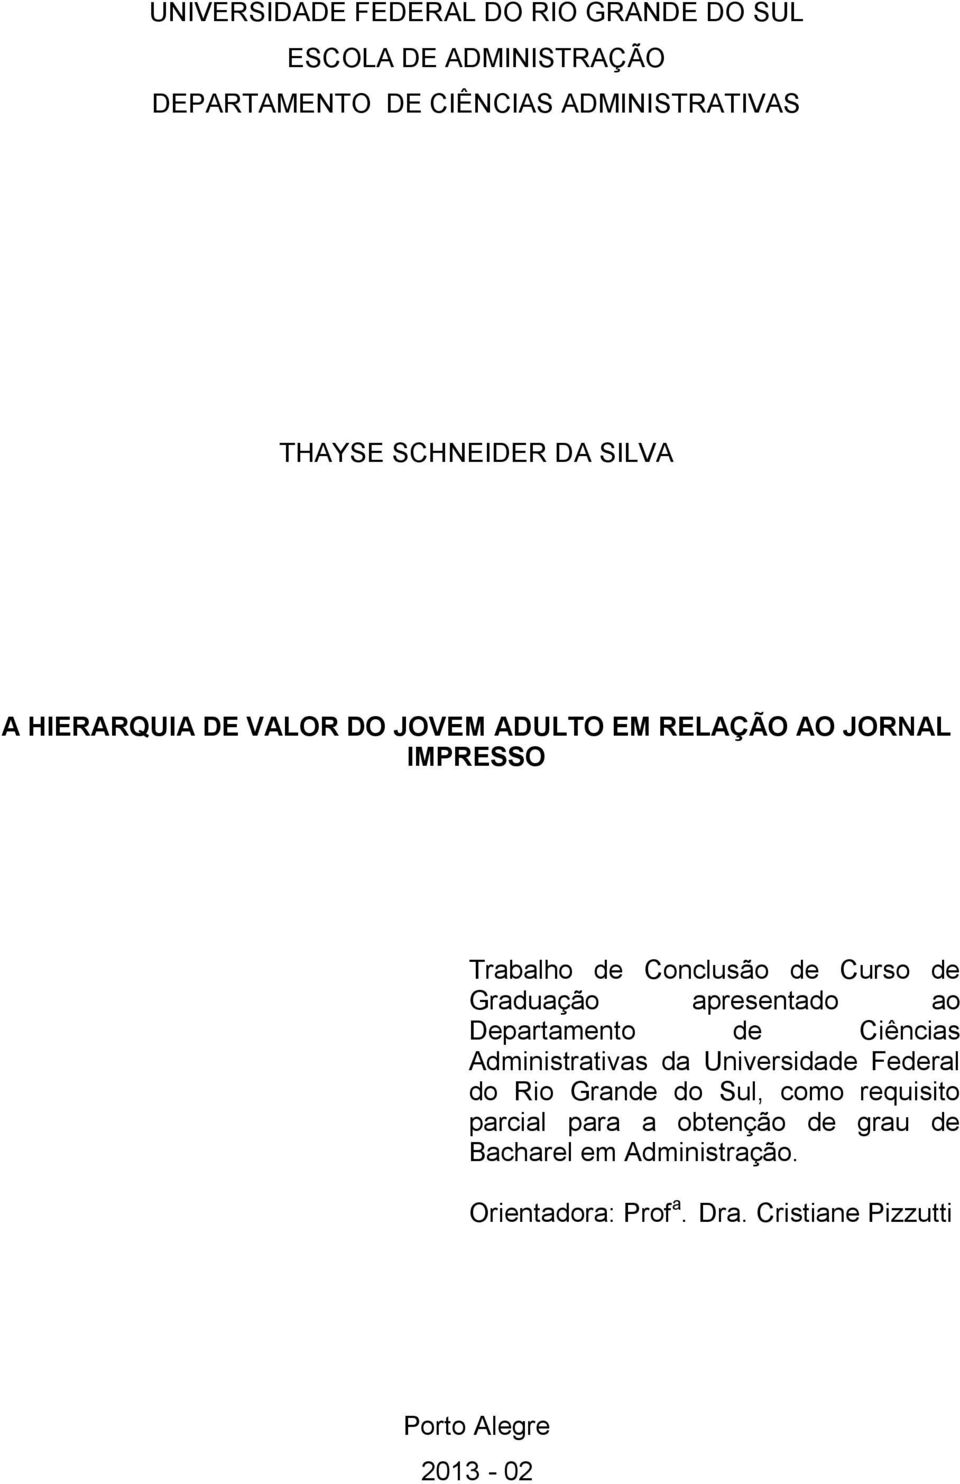 Graduação apresentado ao Departamento de Ciências Administrativas da Universidade Federal do Rio Grande do Sul, como